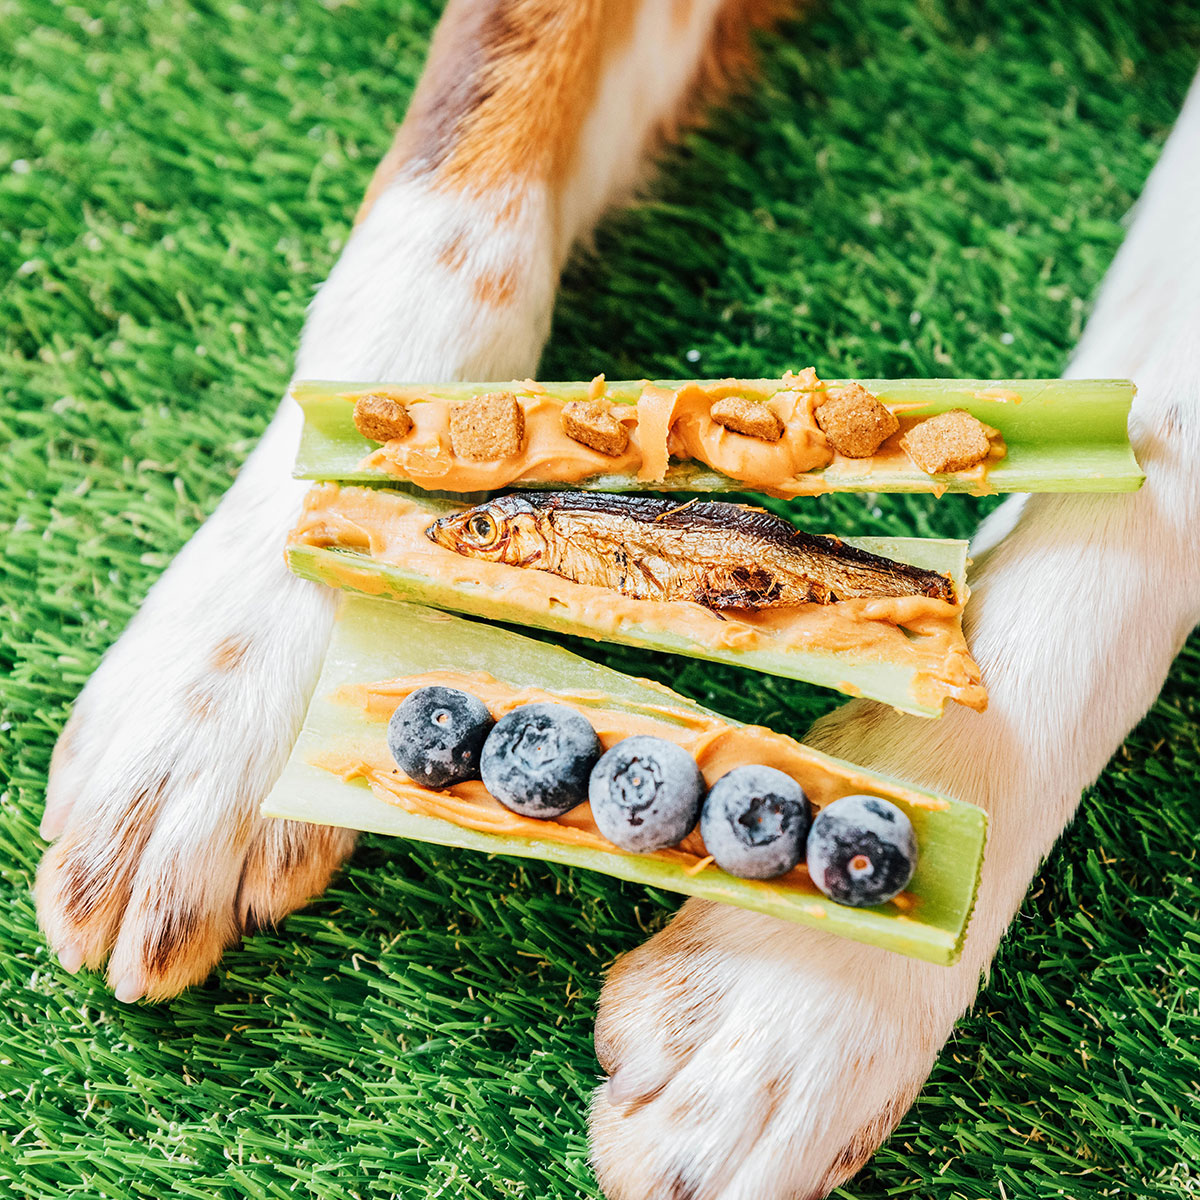 Peanut butter stuffed celery sticks on a dog's paw